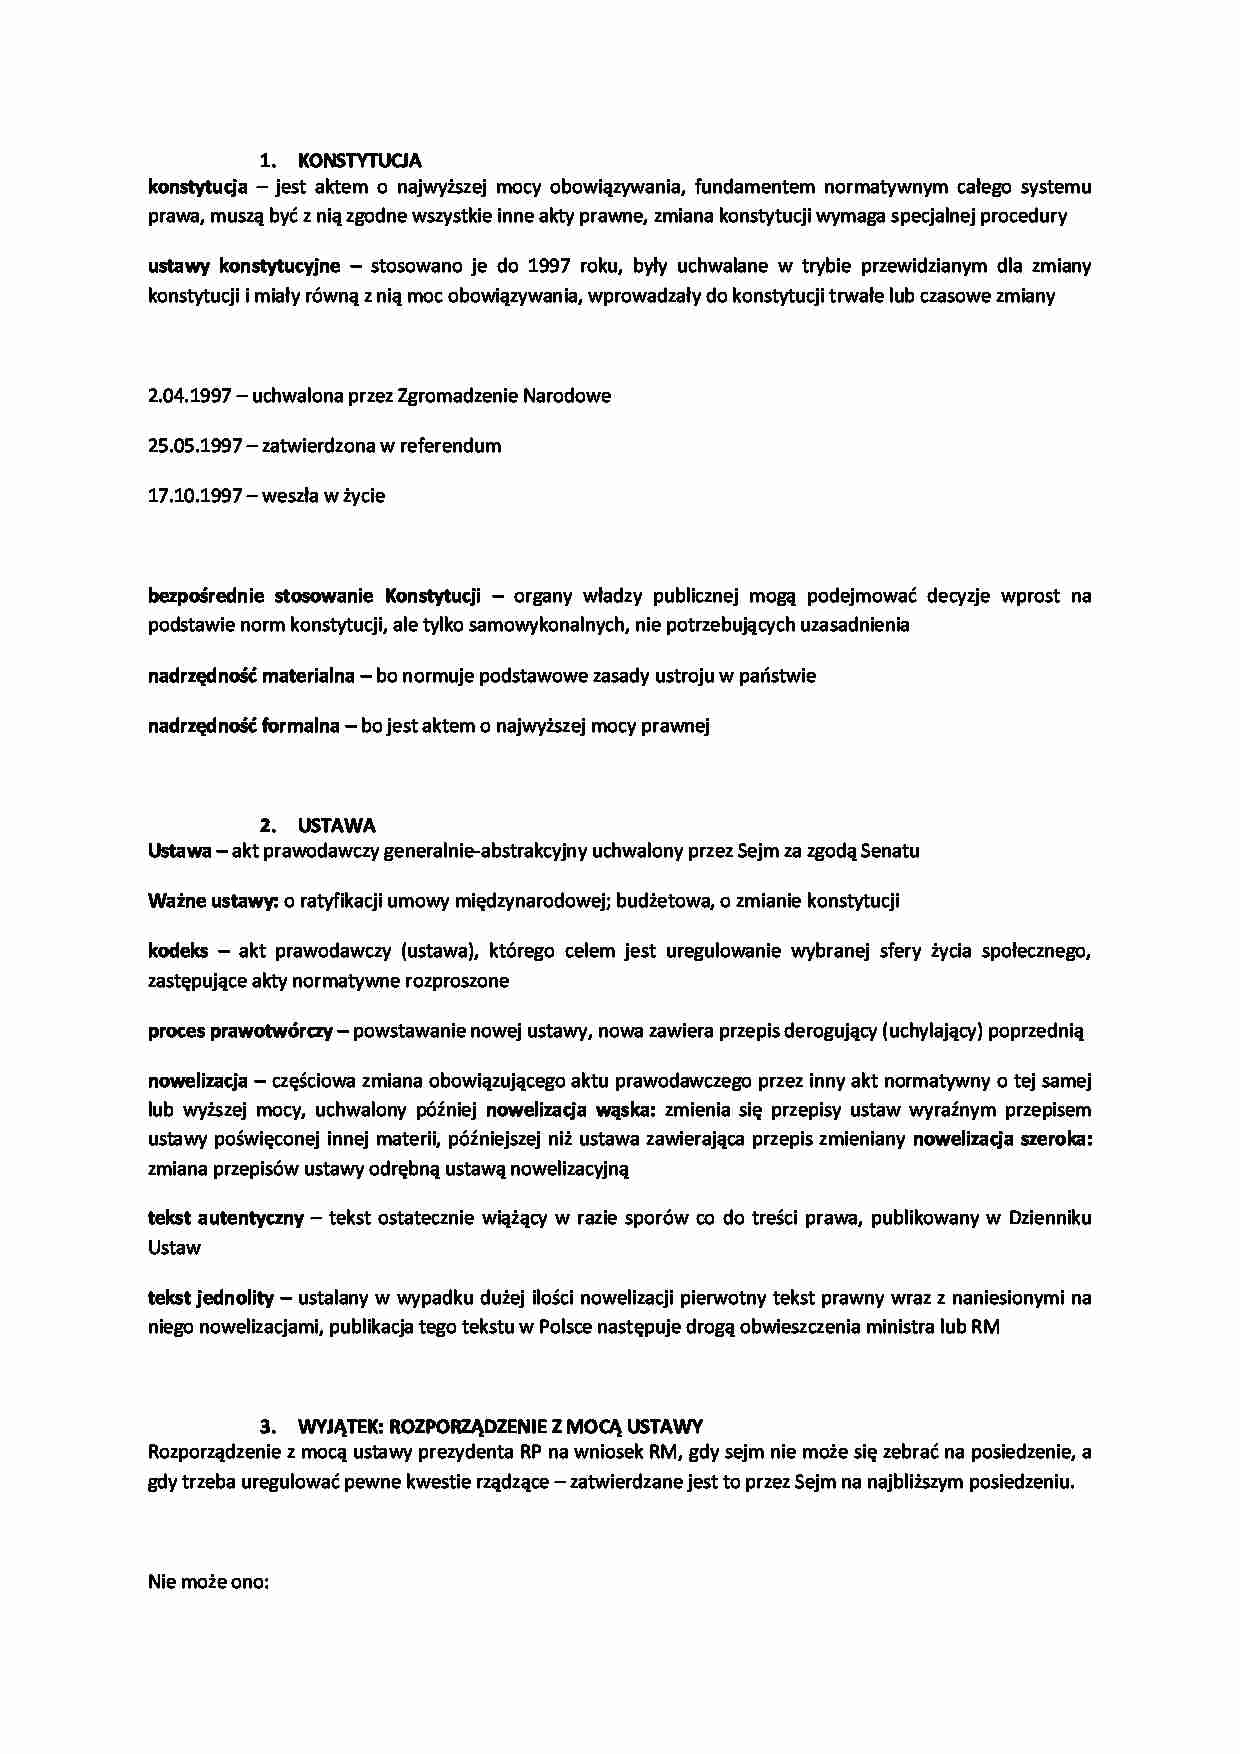 Hierarchia aktów prawnych w Polsce - omówienie  - strona 1